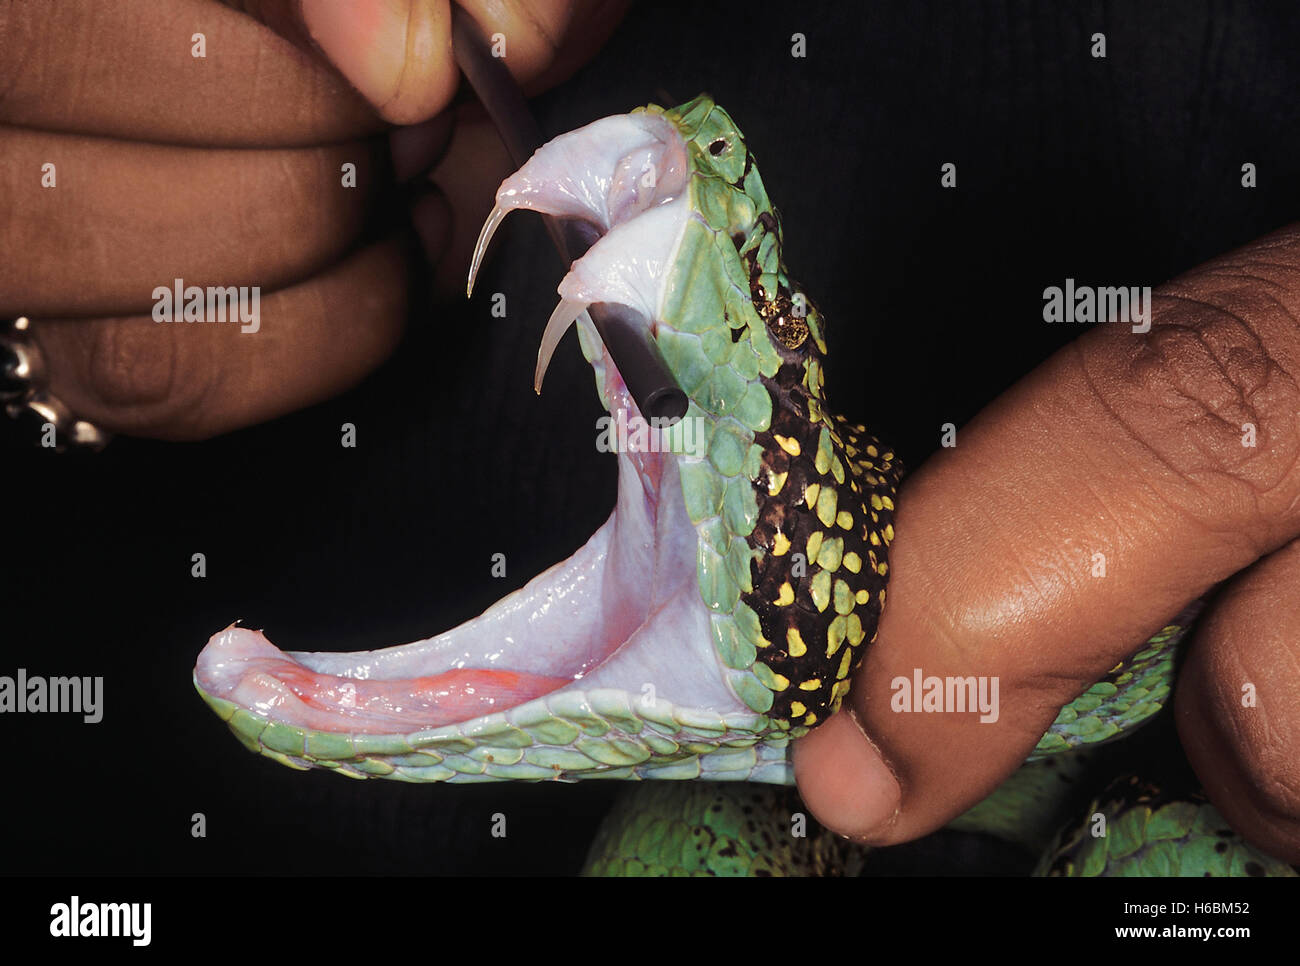 Trimeresurus malabaricus. Malabar pit viper. Un primer plano de la cabeza de esta serpiente con la boca abierta mostrando los colmillos expuestos. Foto de stock